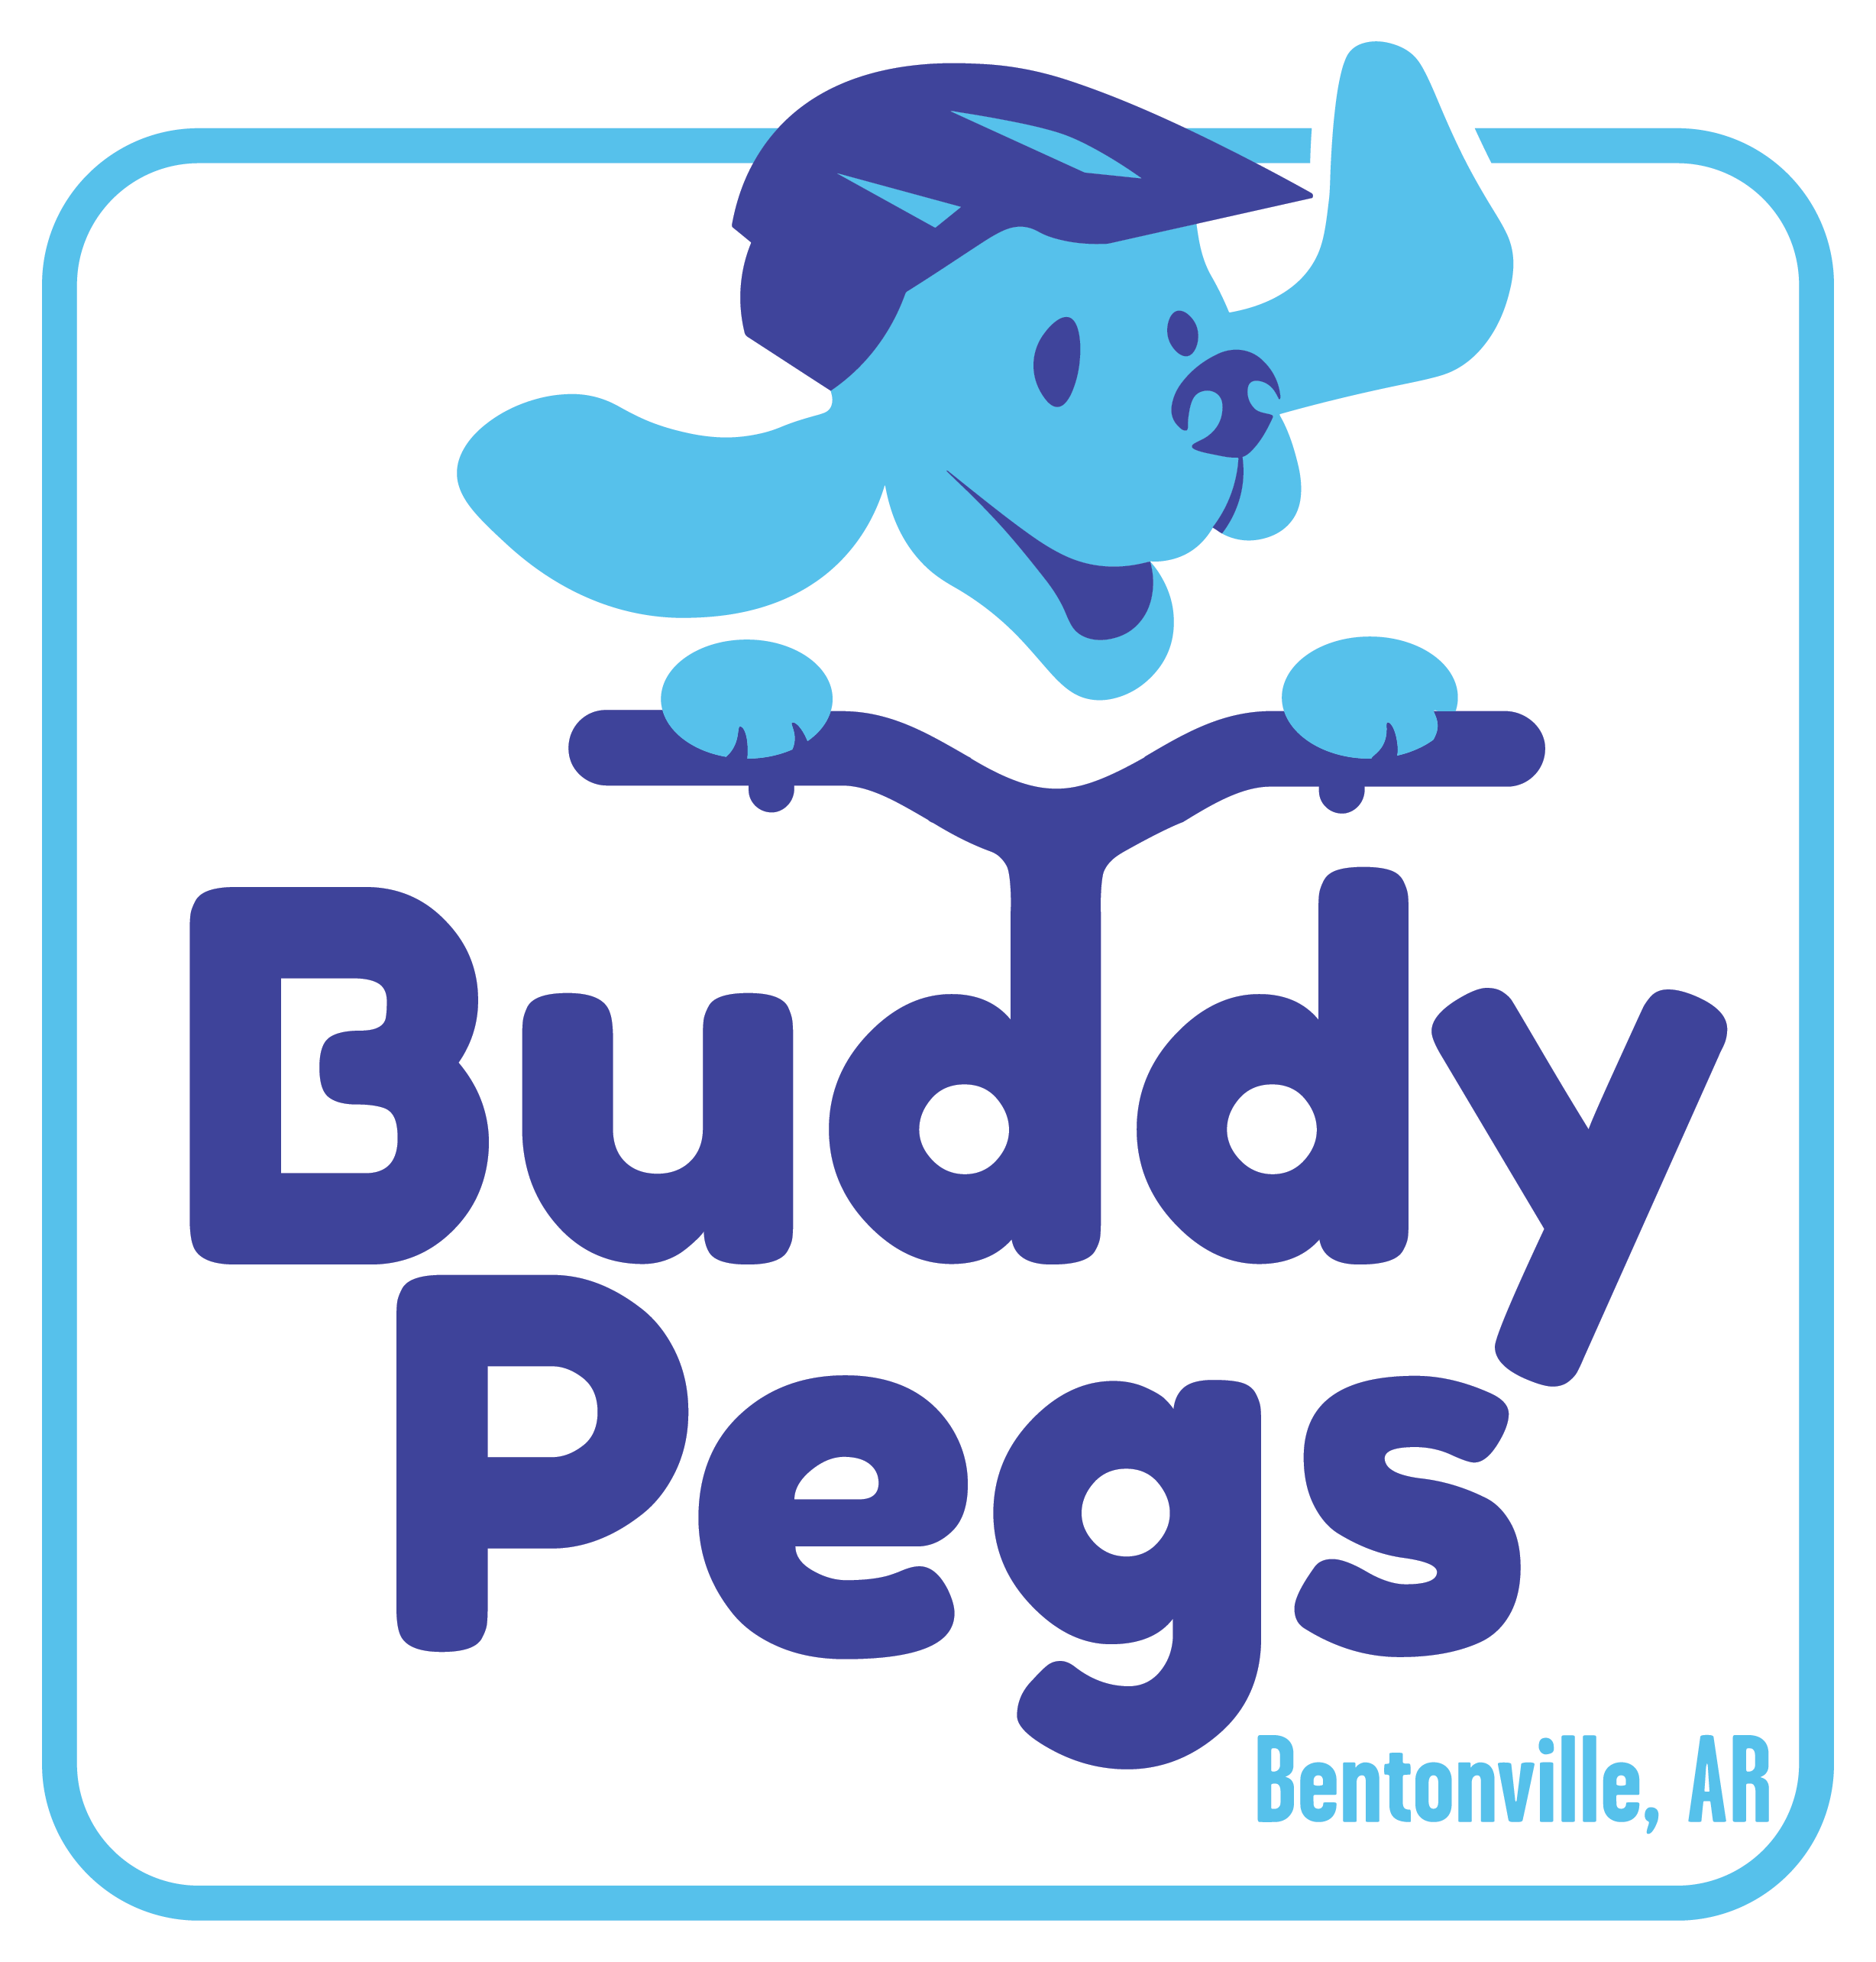 Buddy Pegs